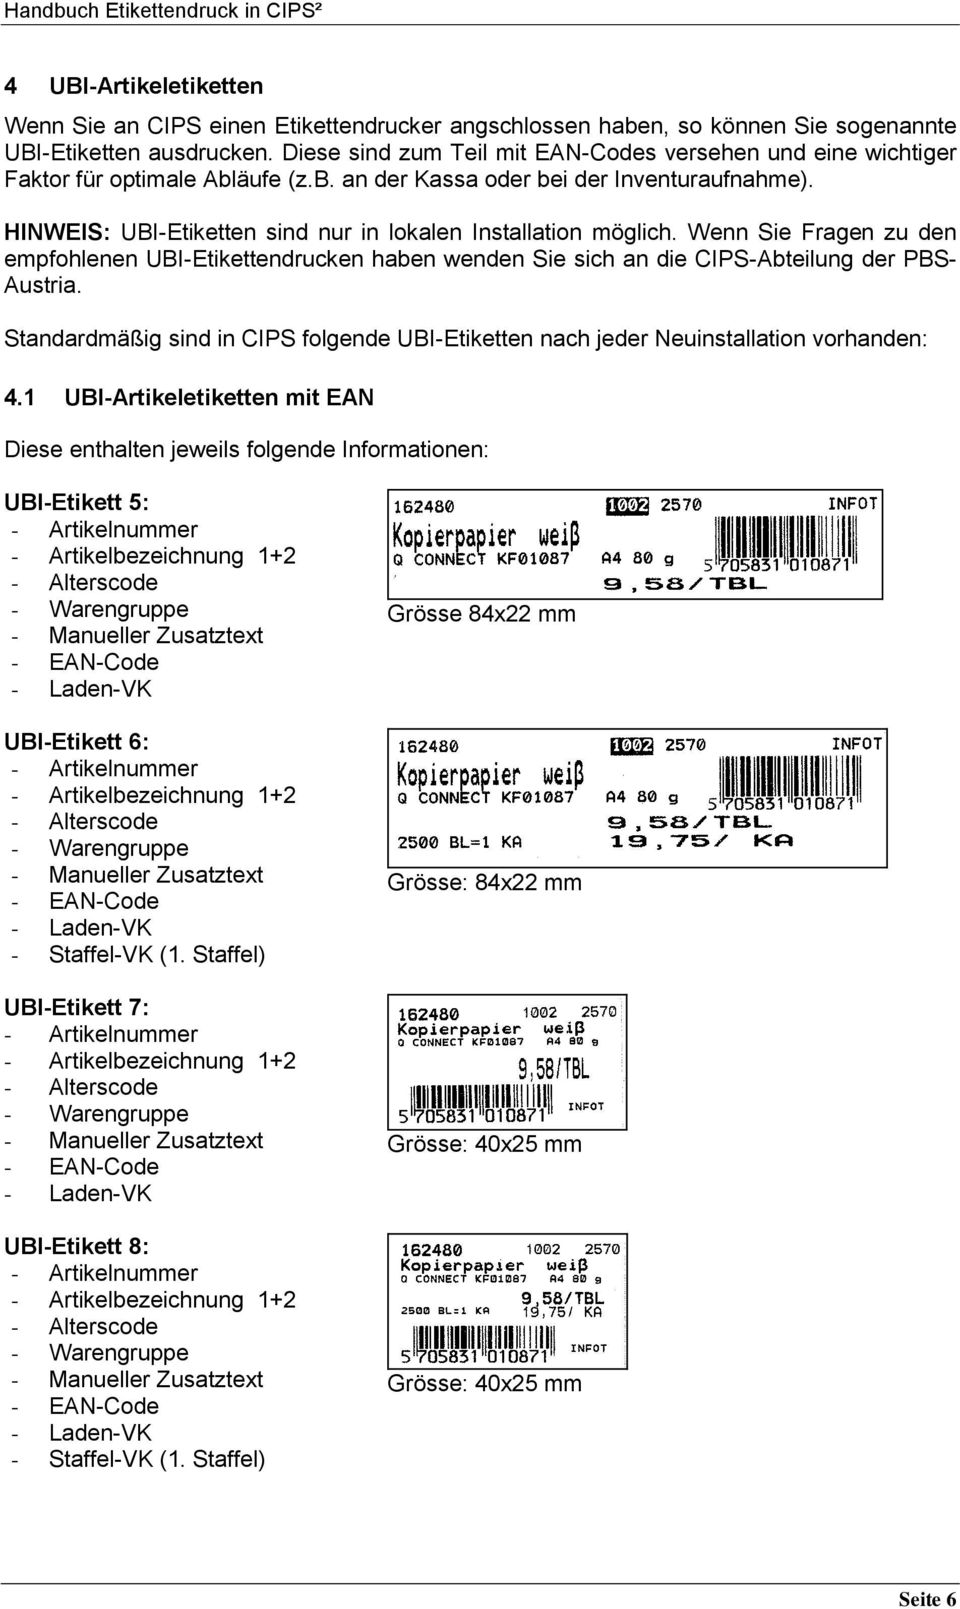 HINWEIS: UBI-Etiketten sind nur in lokalen Installation möglich. Wenn Sie Fragen zu den empfohlenen UBI-Etikettendrucken haben wenden Sie sich an die CIPS-Abteilung der PBS- Austria.